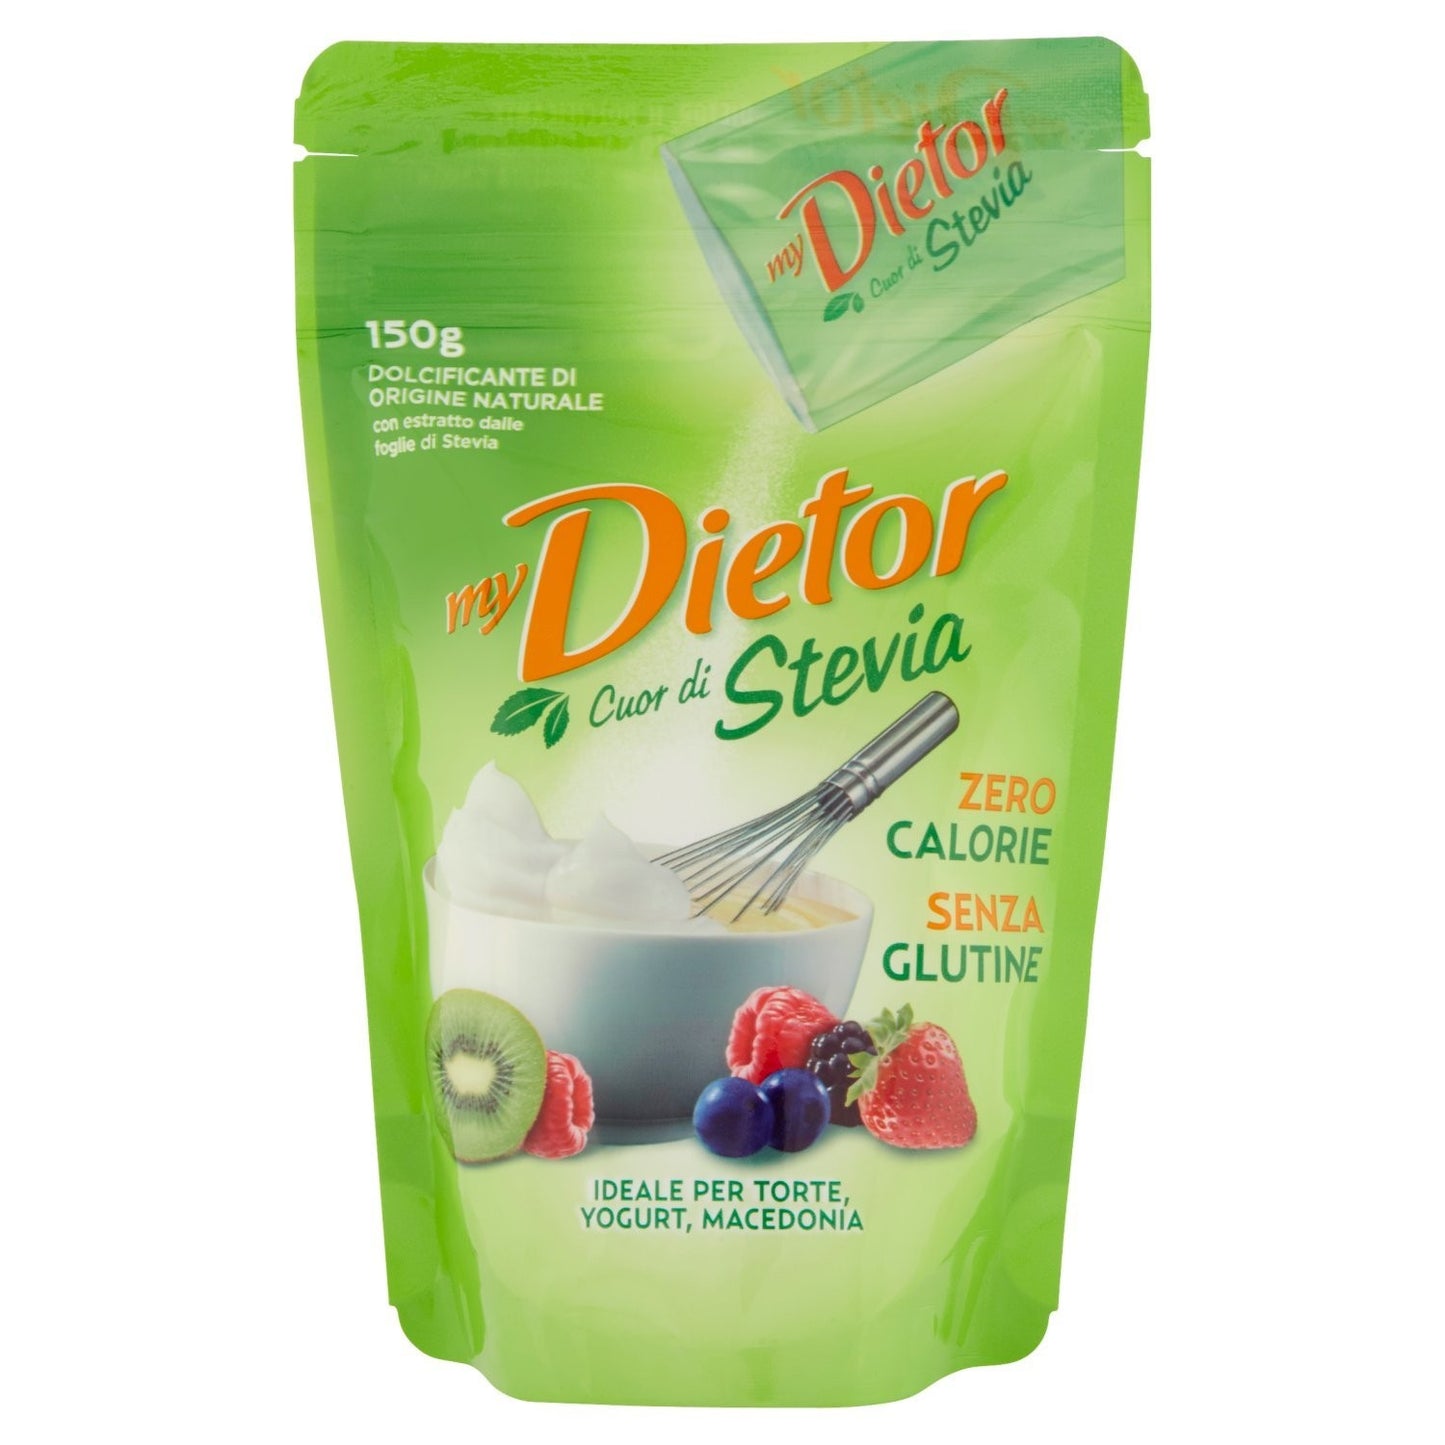 Dietor - Dolcificante, Cuor di Stevia - 6 pezzi da 150 g